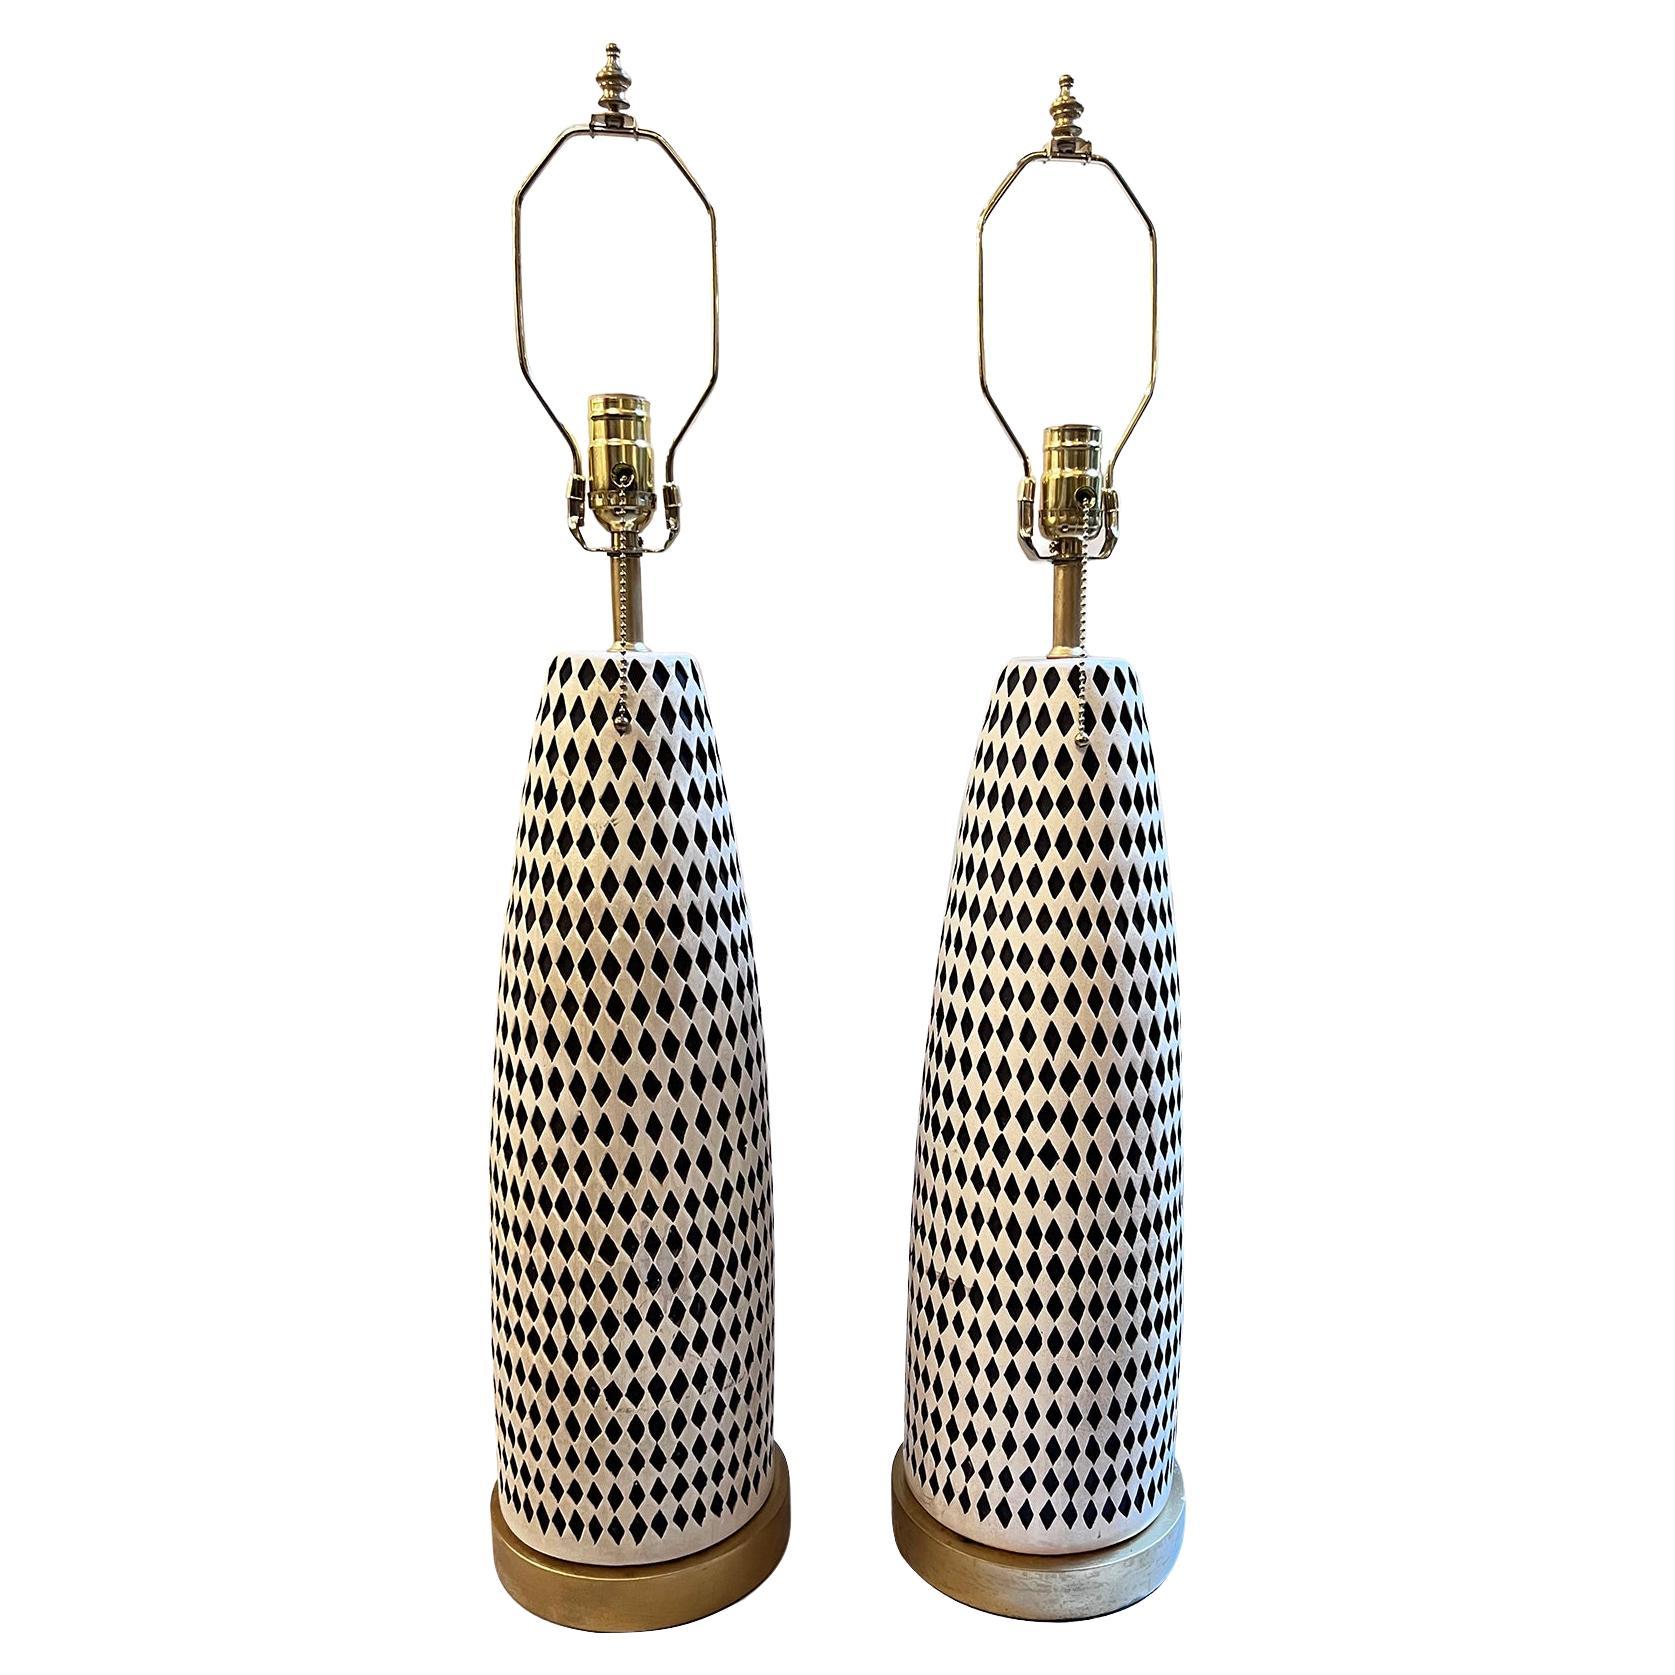 Pair of Midcentury Italian Ceramic Lamps